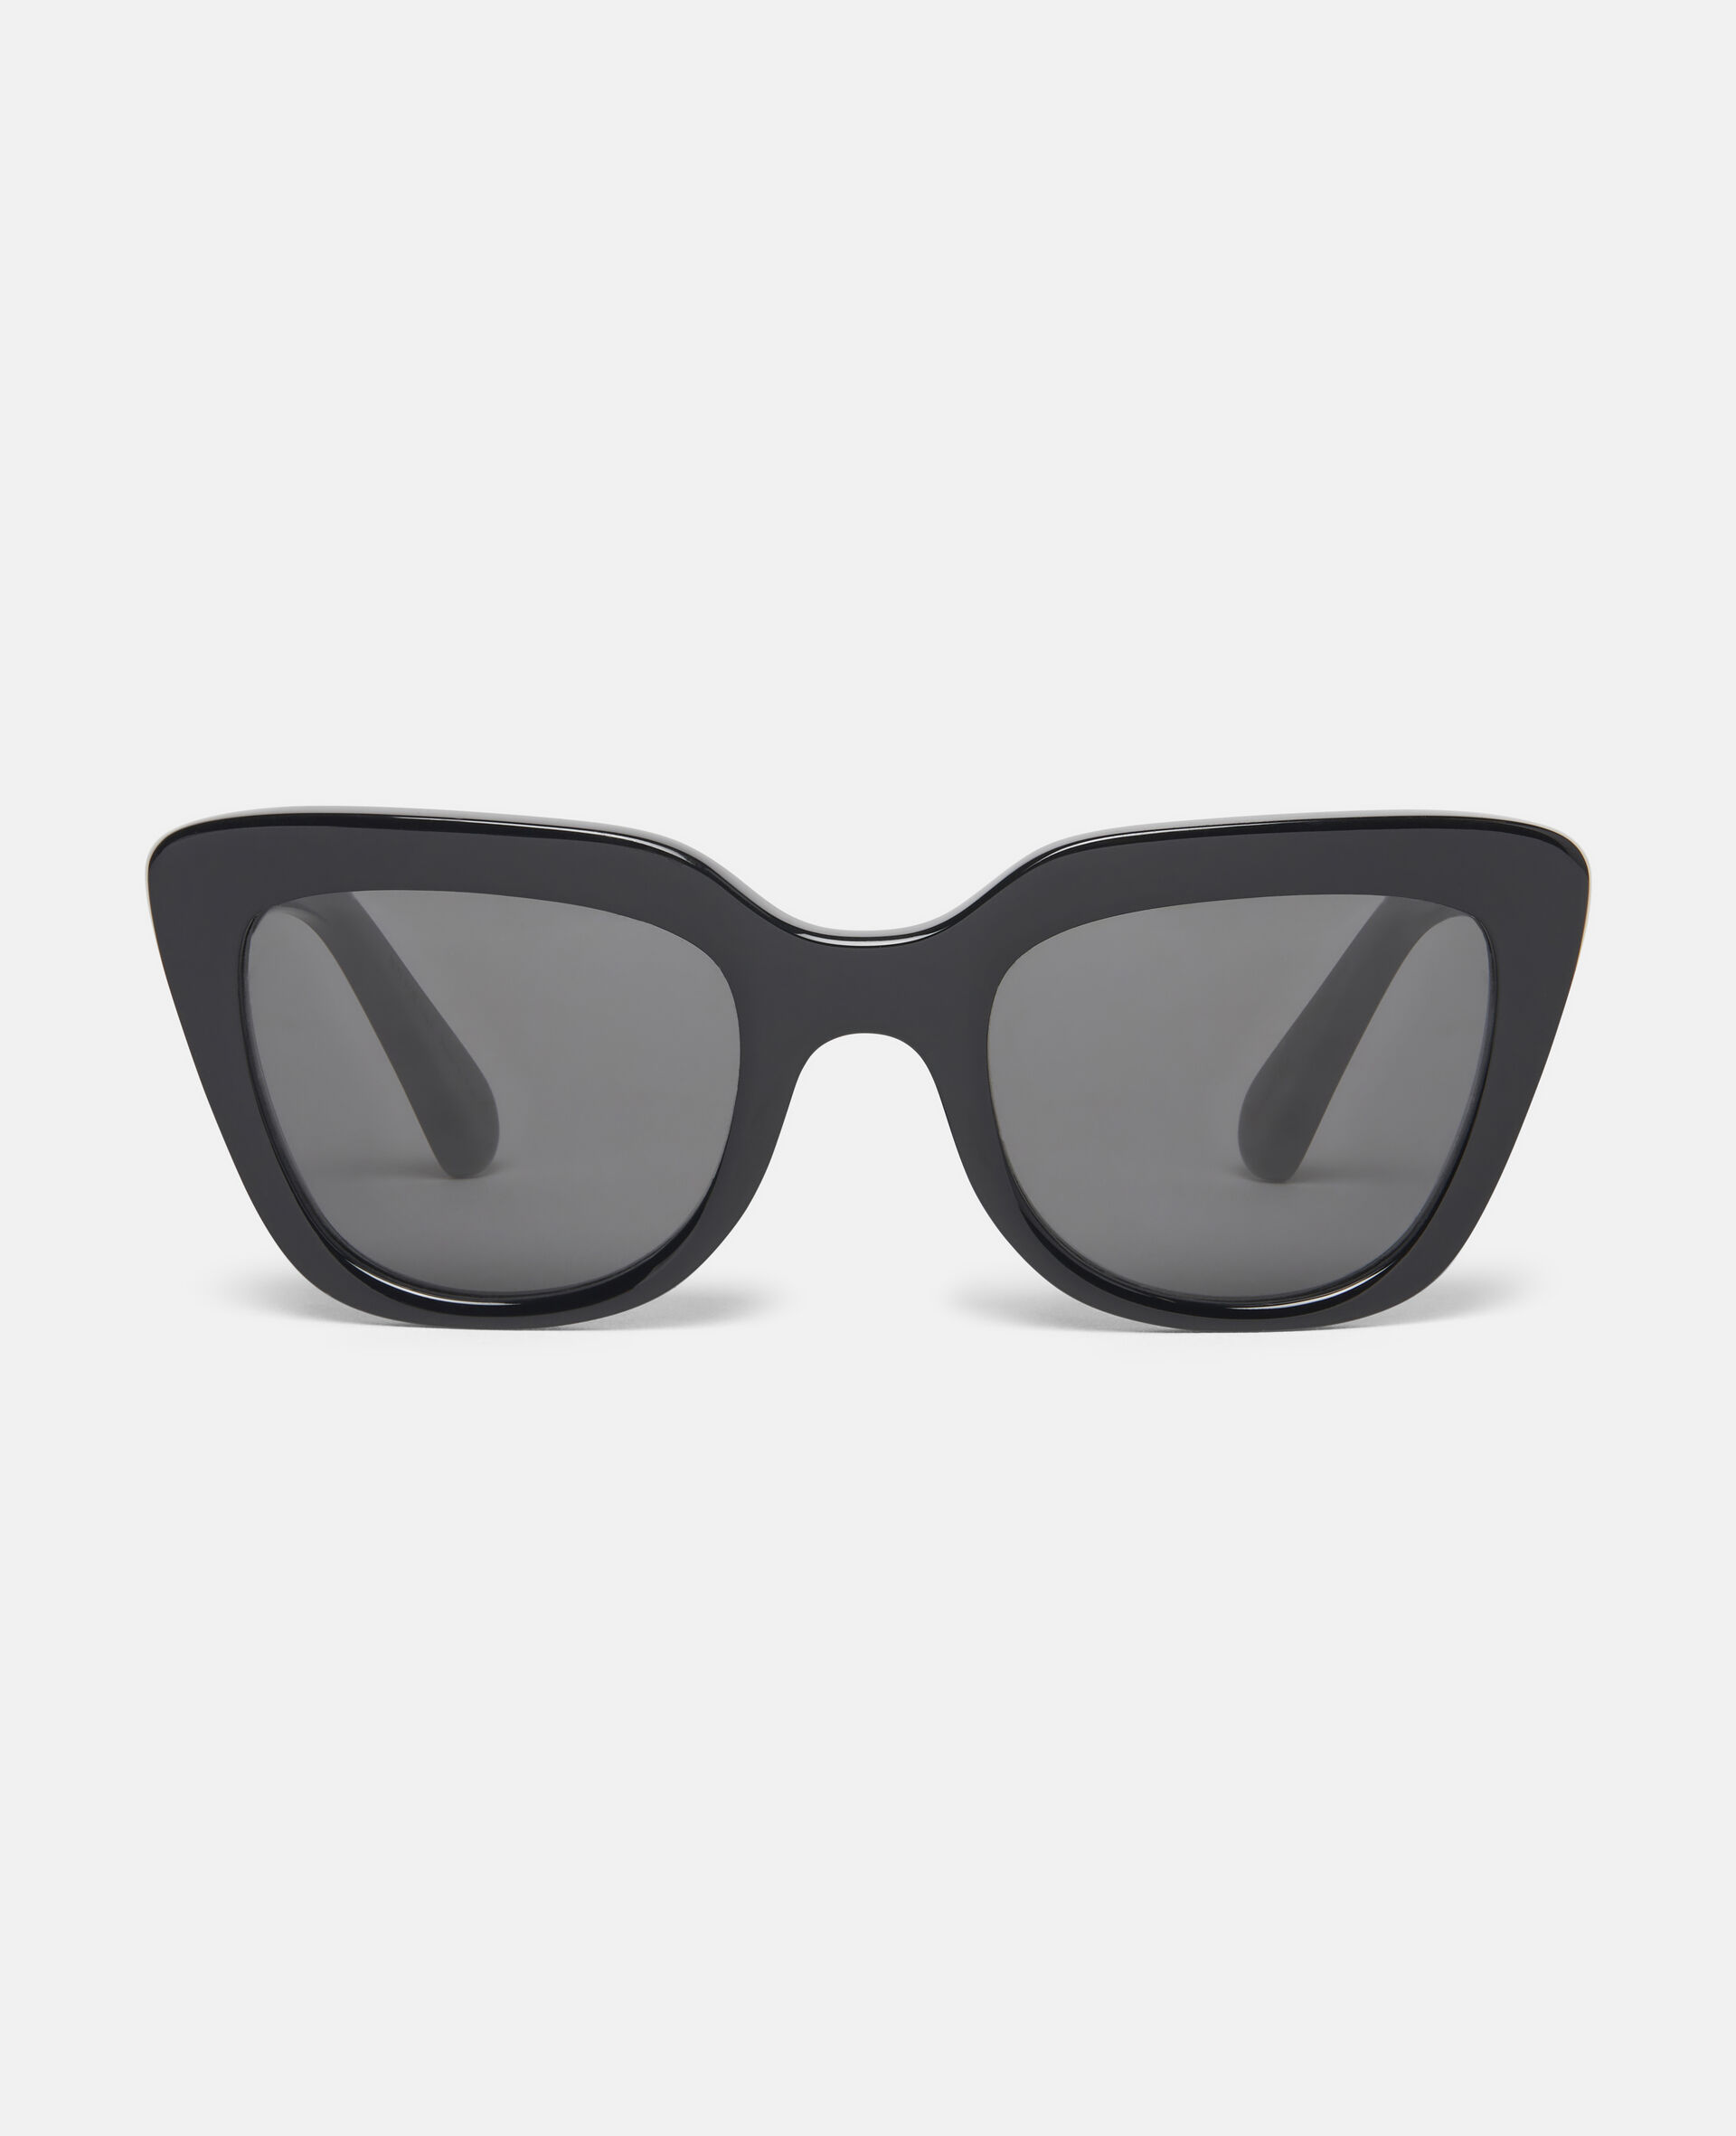 Mini Me Sunglasses-Black-large